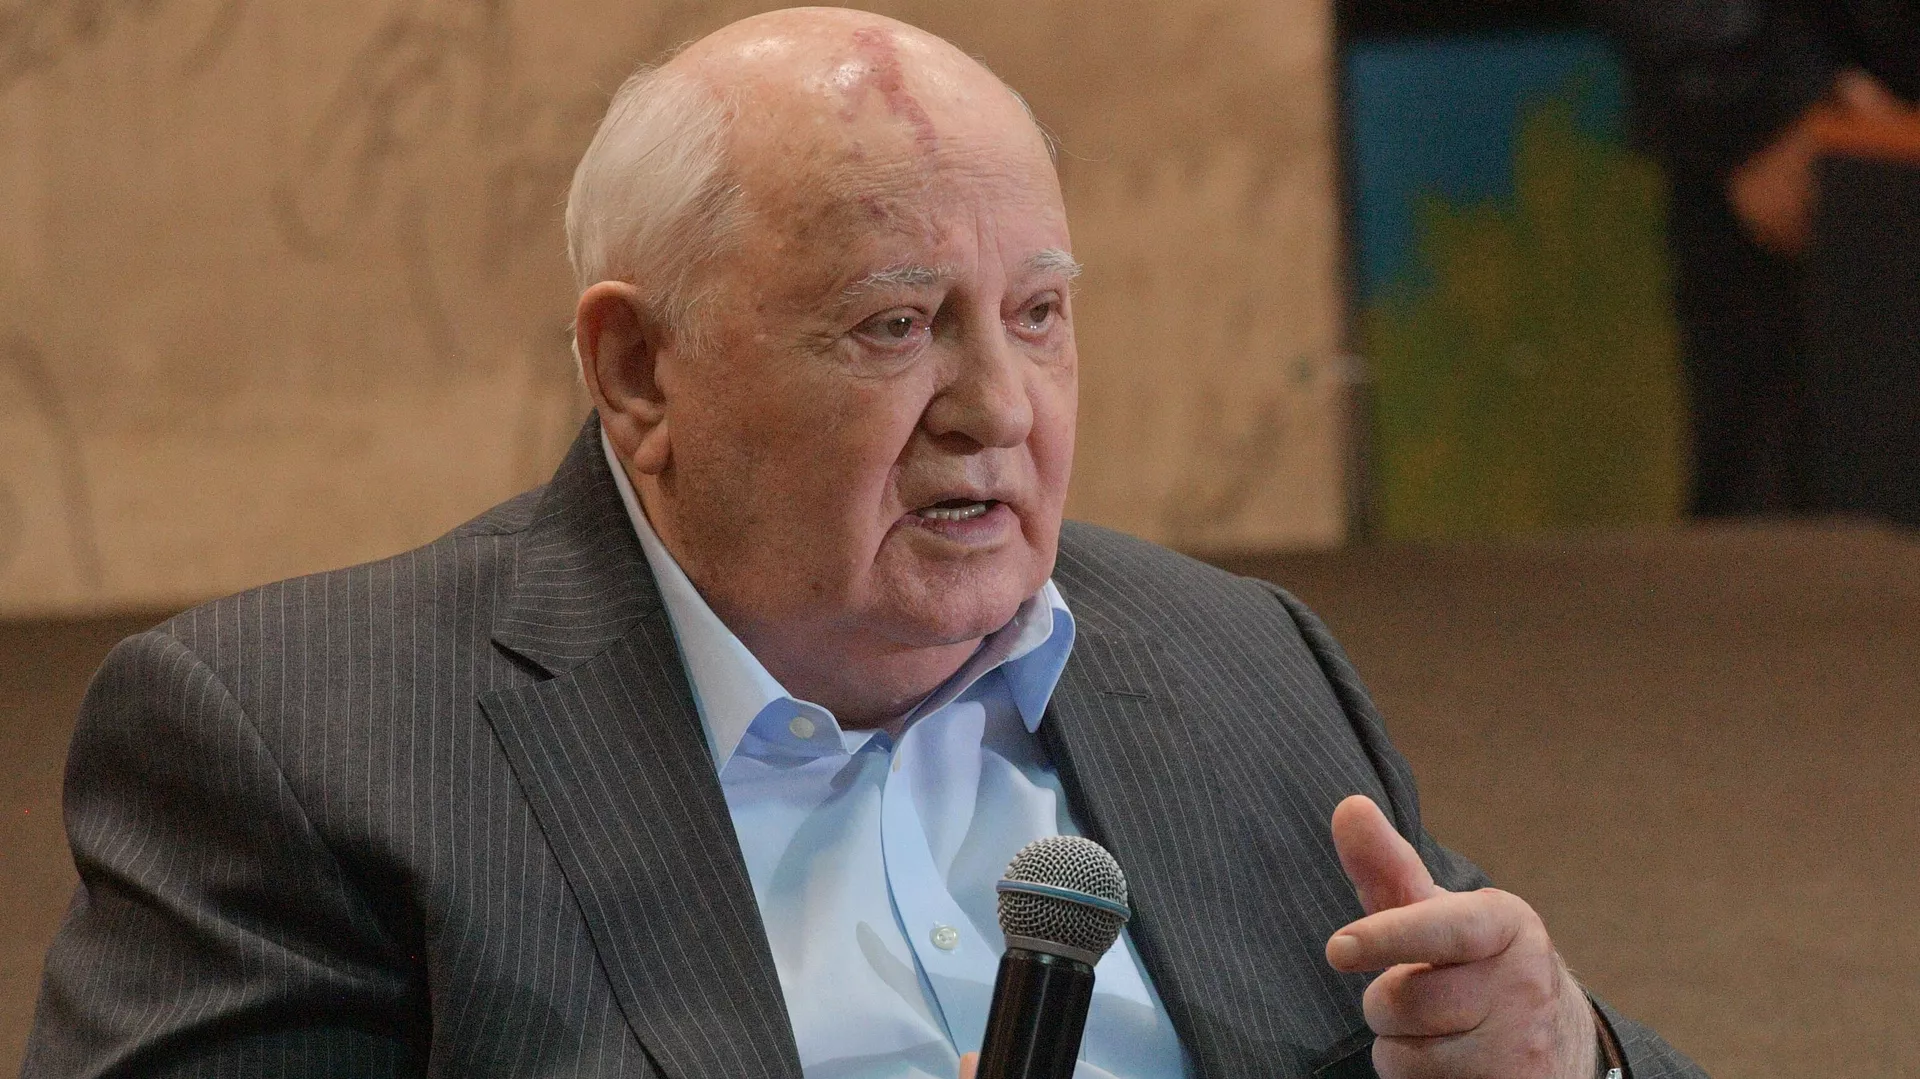 Горбачев:  Если бы Советский Союз удалось сохранить, мир сегодня был бы стабильнее, безопаснее и справедливее